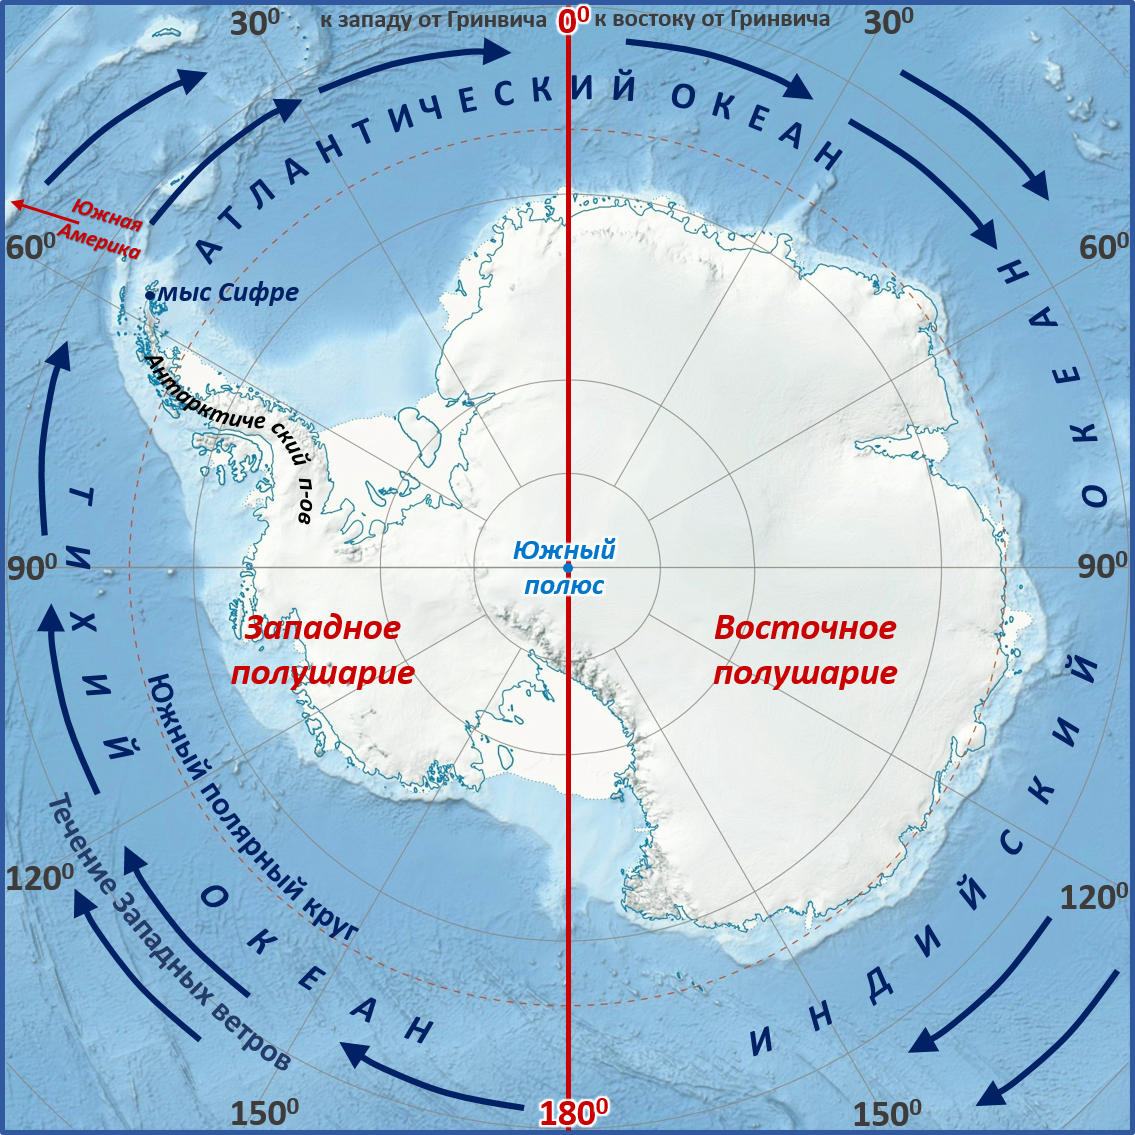 Южный океан пояса. Мыс Сифре на карте Антарктиды. Моря: Амундсена, Беллинсгаузена, Росса, Уэдделла.. Мыс Сифре Антарктида. Южный полюс на карте Антарктиды.